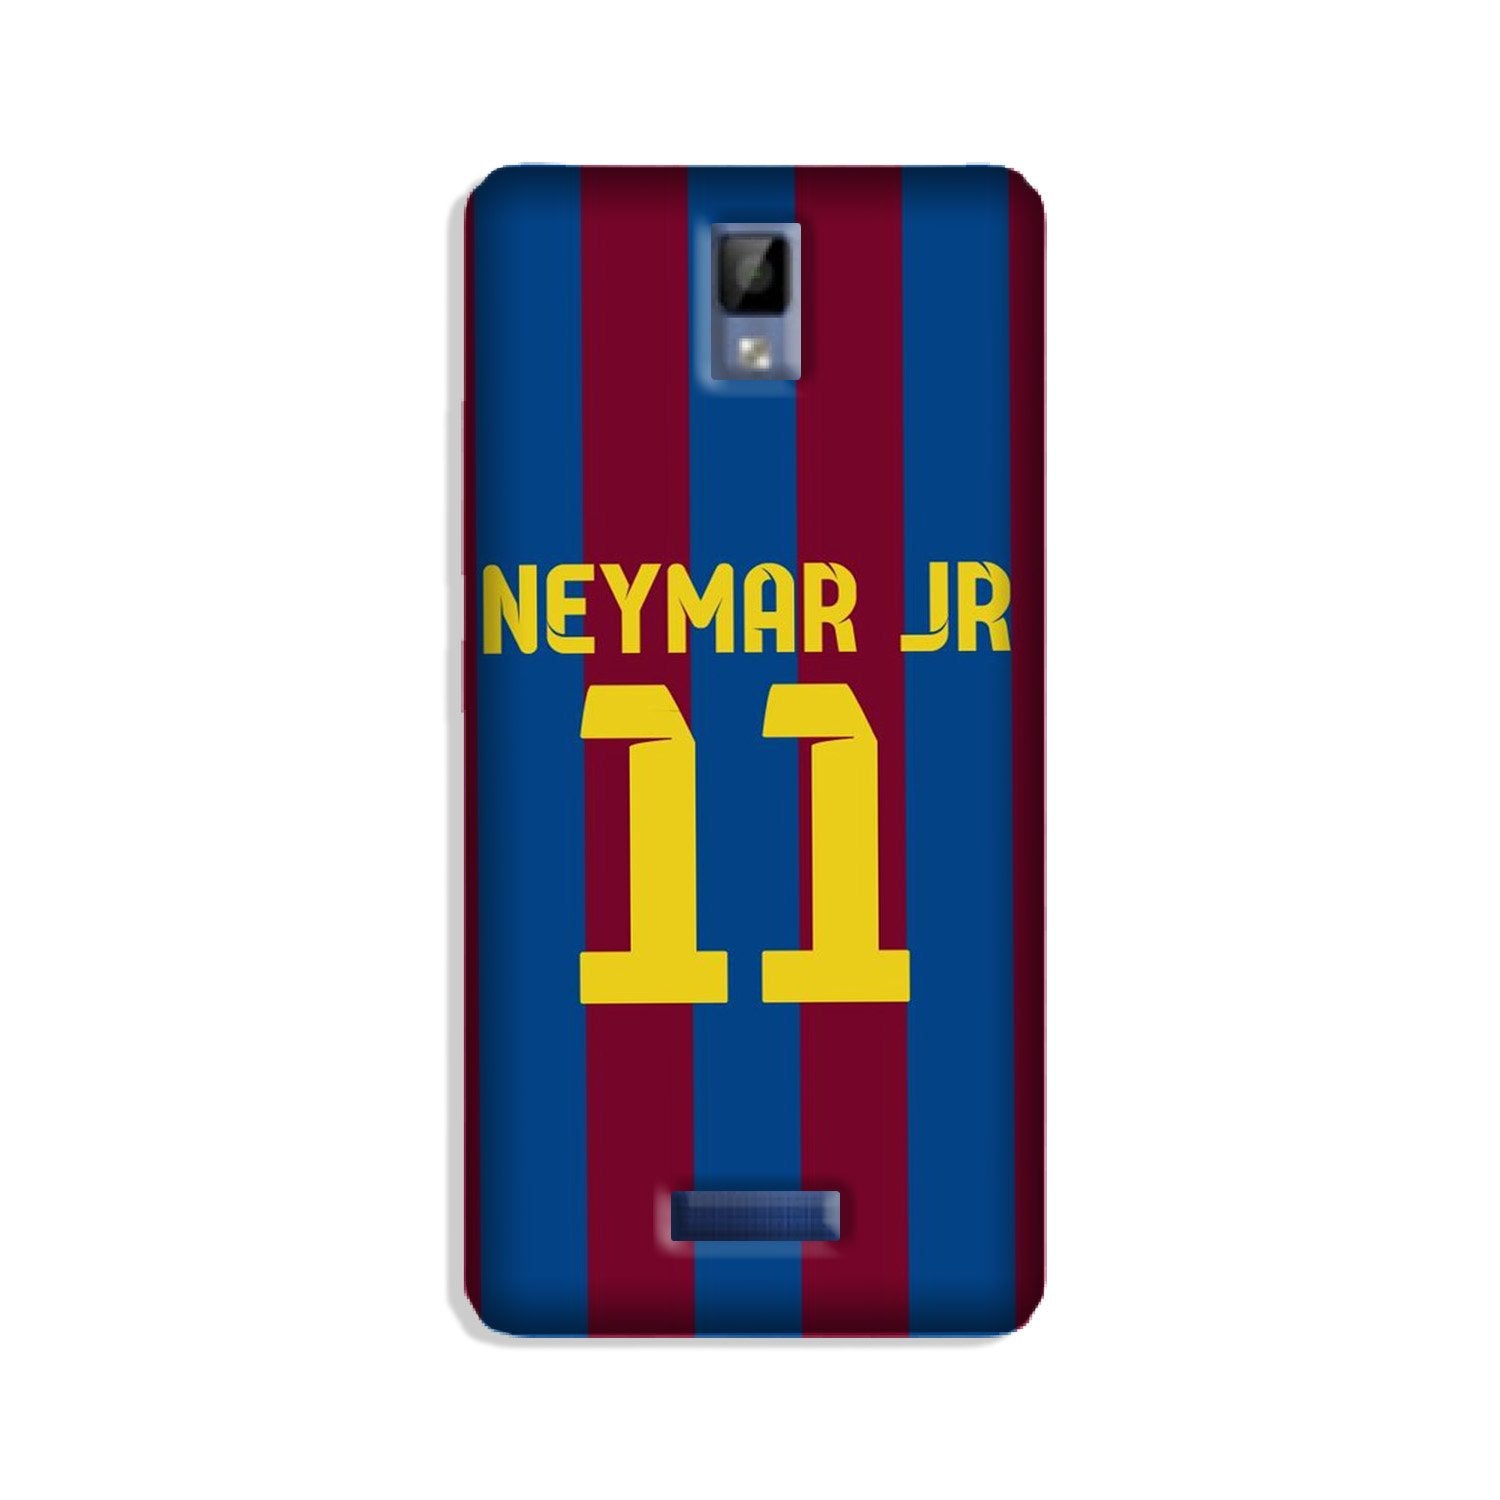 Neymar Jr Case for Gionee P7(Design - 162)